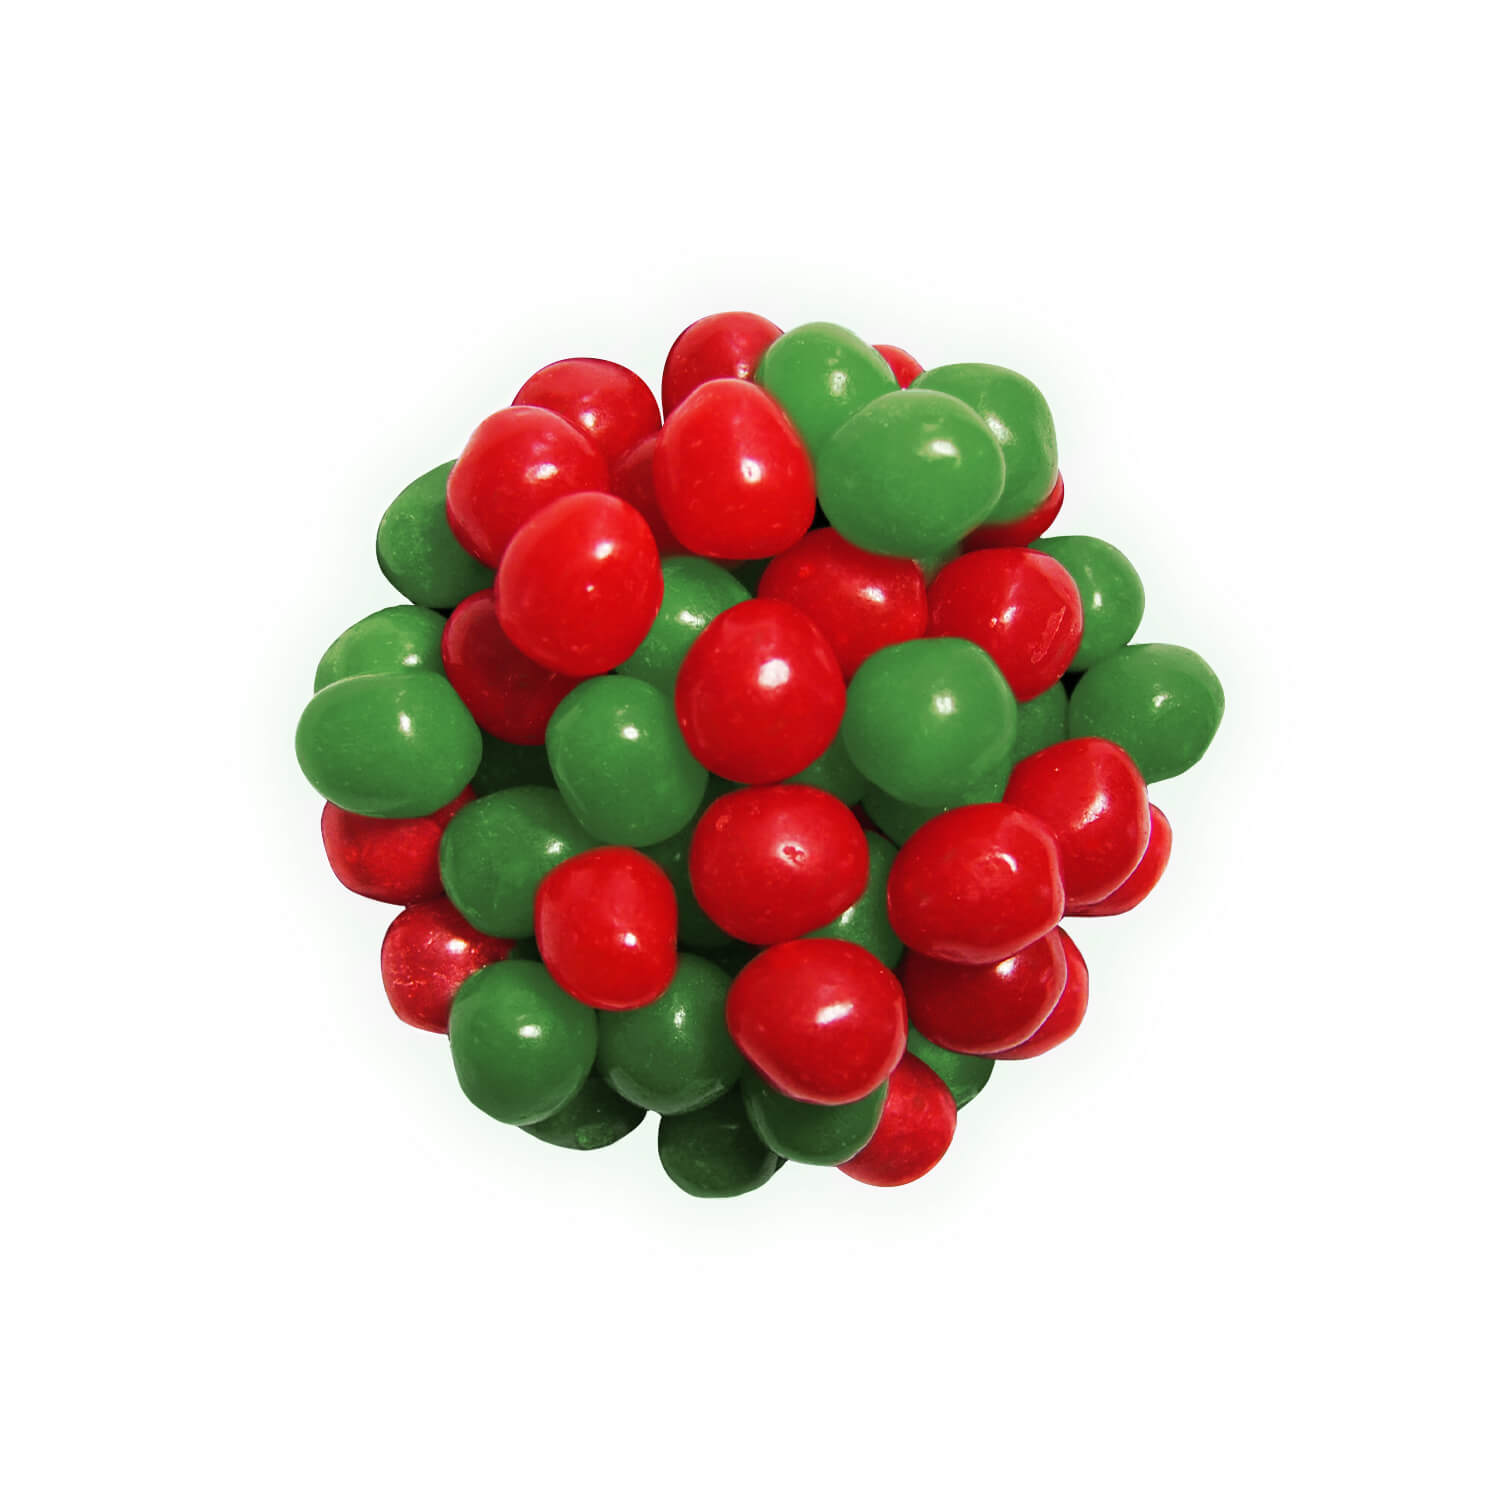 Sour Christmas balls